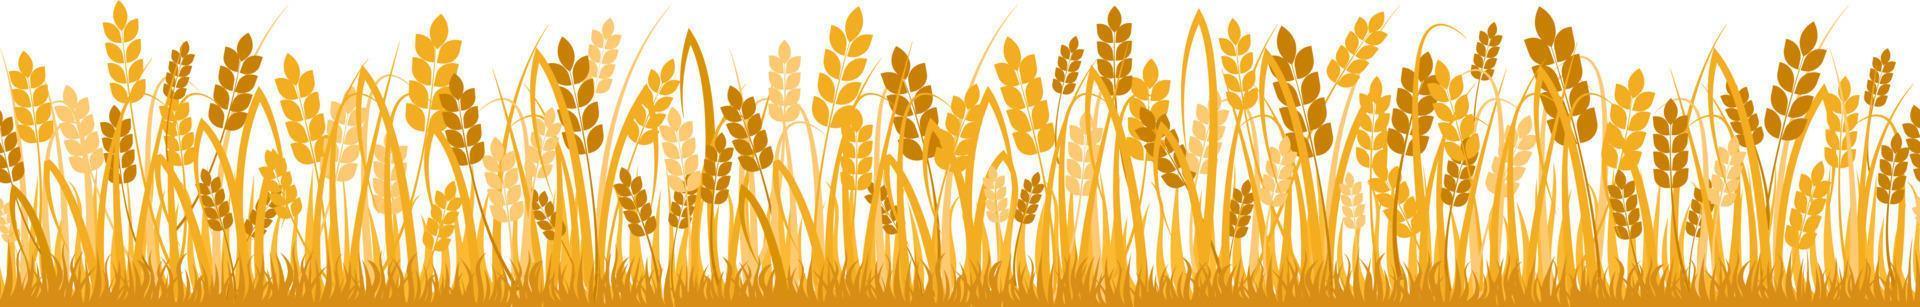 cartoon gele tarweveld achtergrond geïsoleerd op wit. gouden herfst oogst haver graan natuurlijke landelijke weide boerderij landbouw landschap achtergrond platte vectorillustratie vector